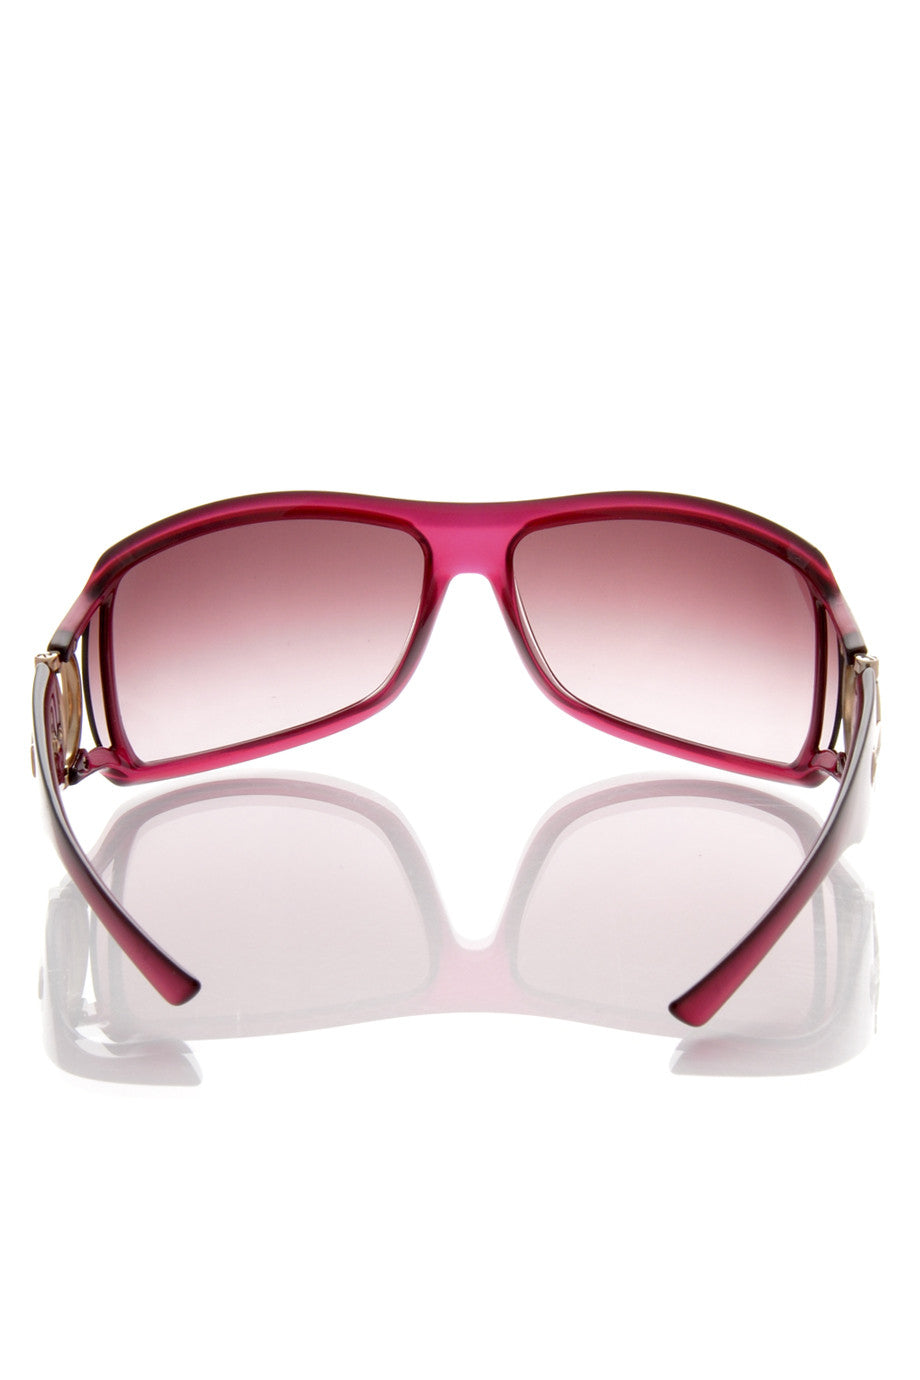 Μπορντώ Γυαλιά Ηλίου - Gucci 2919 | Γυναικεία Γυαλιά Ηλίου